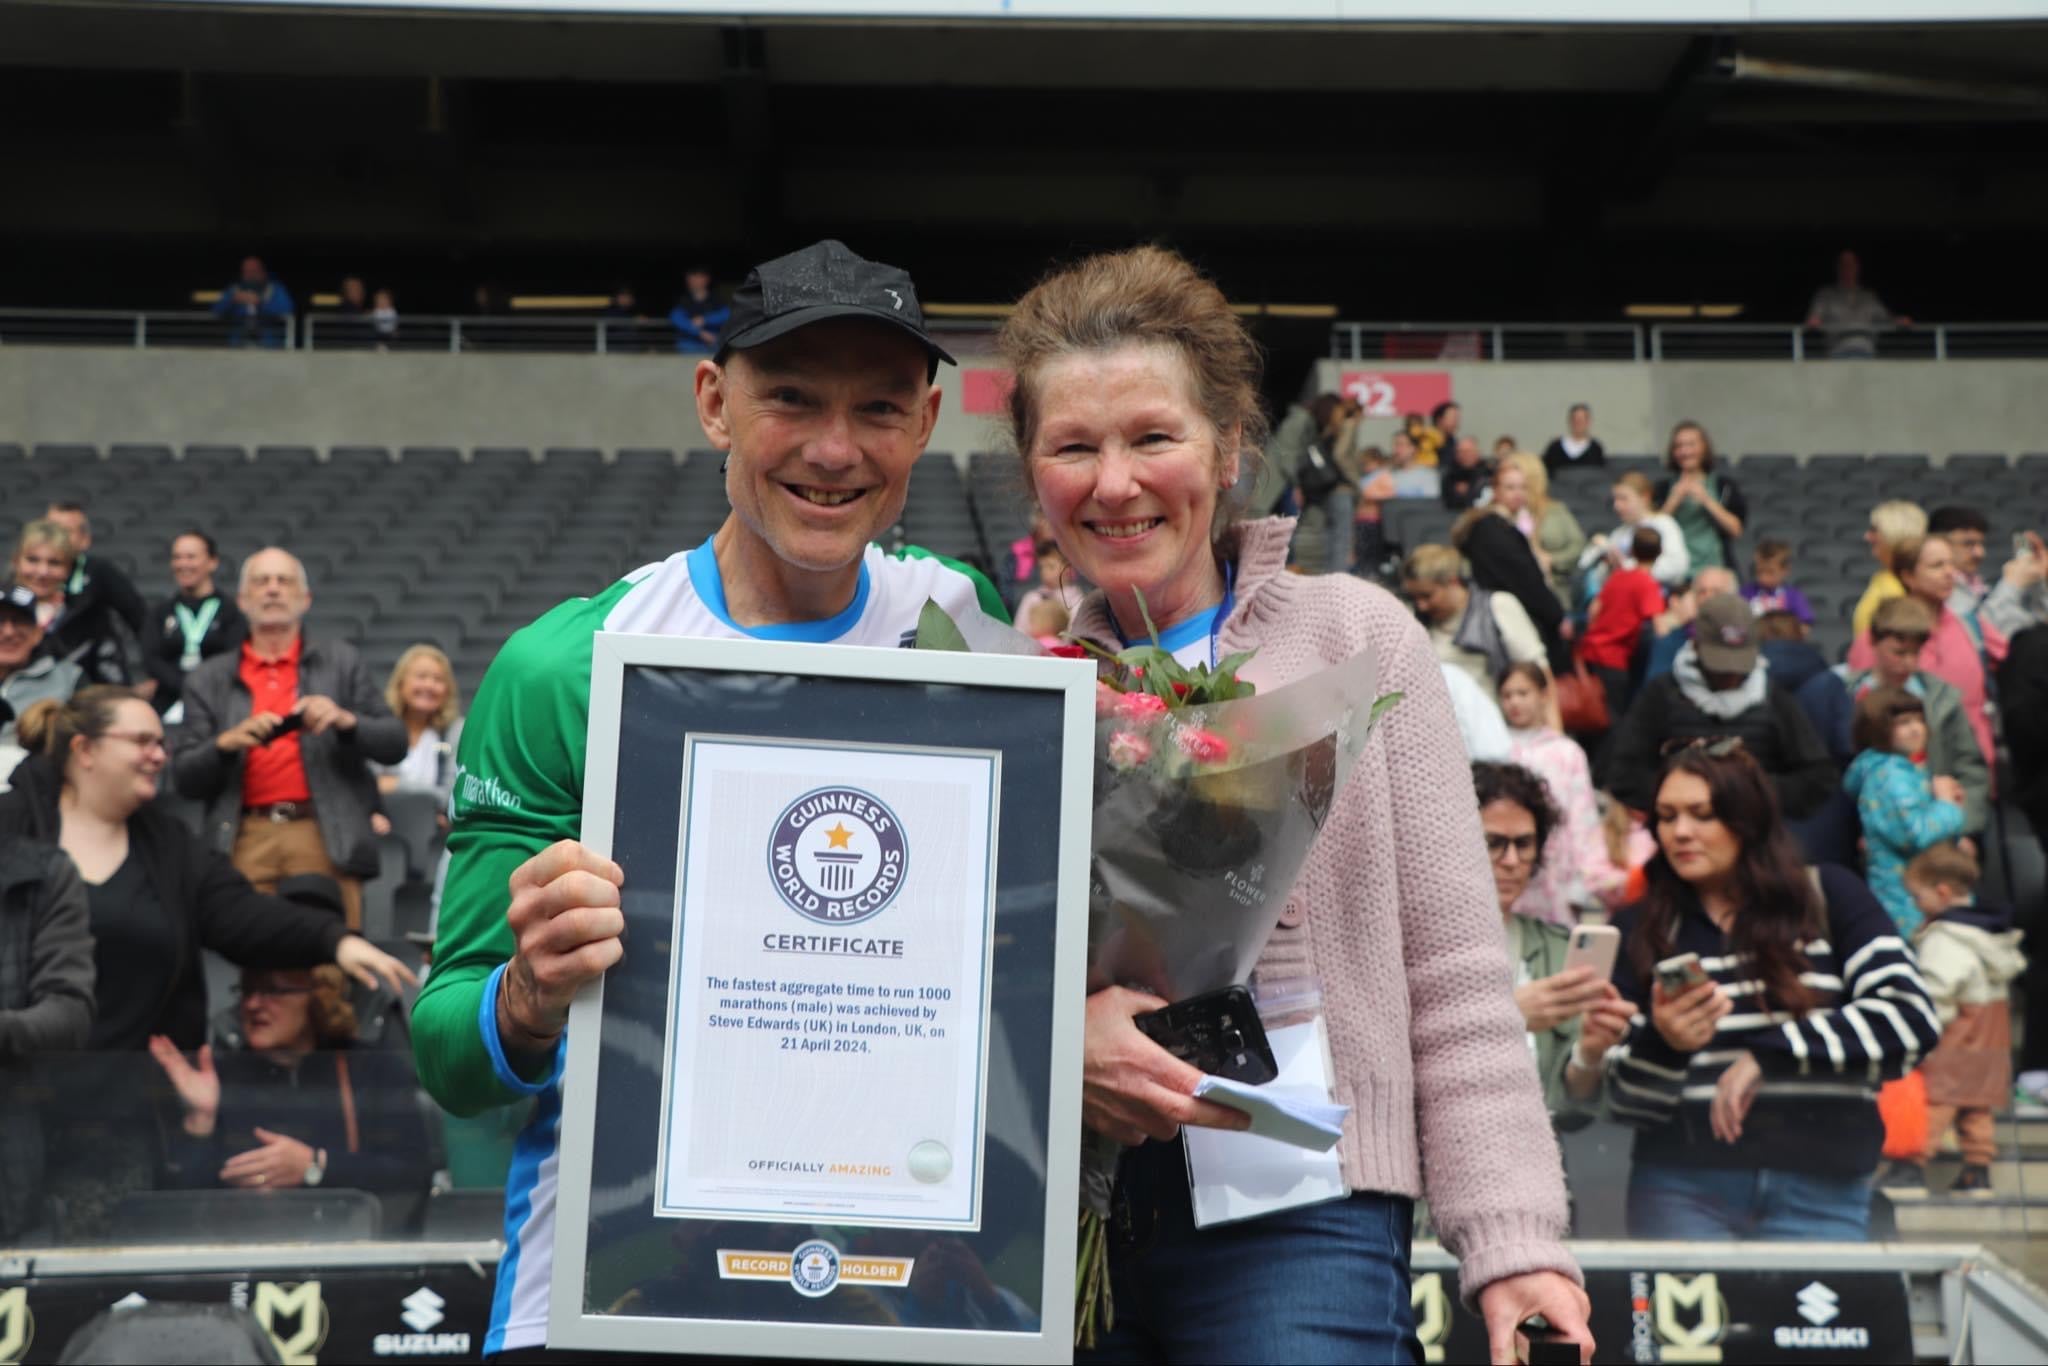 Meet Steve Edwards, The Man Who Ran 1000 Marathons - A New World Record!